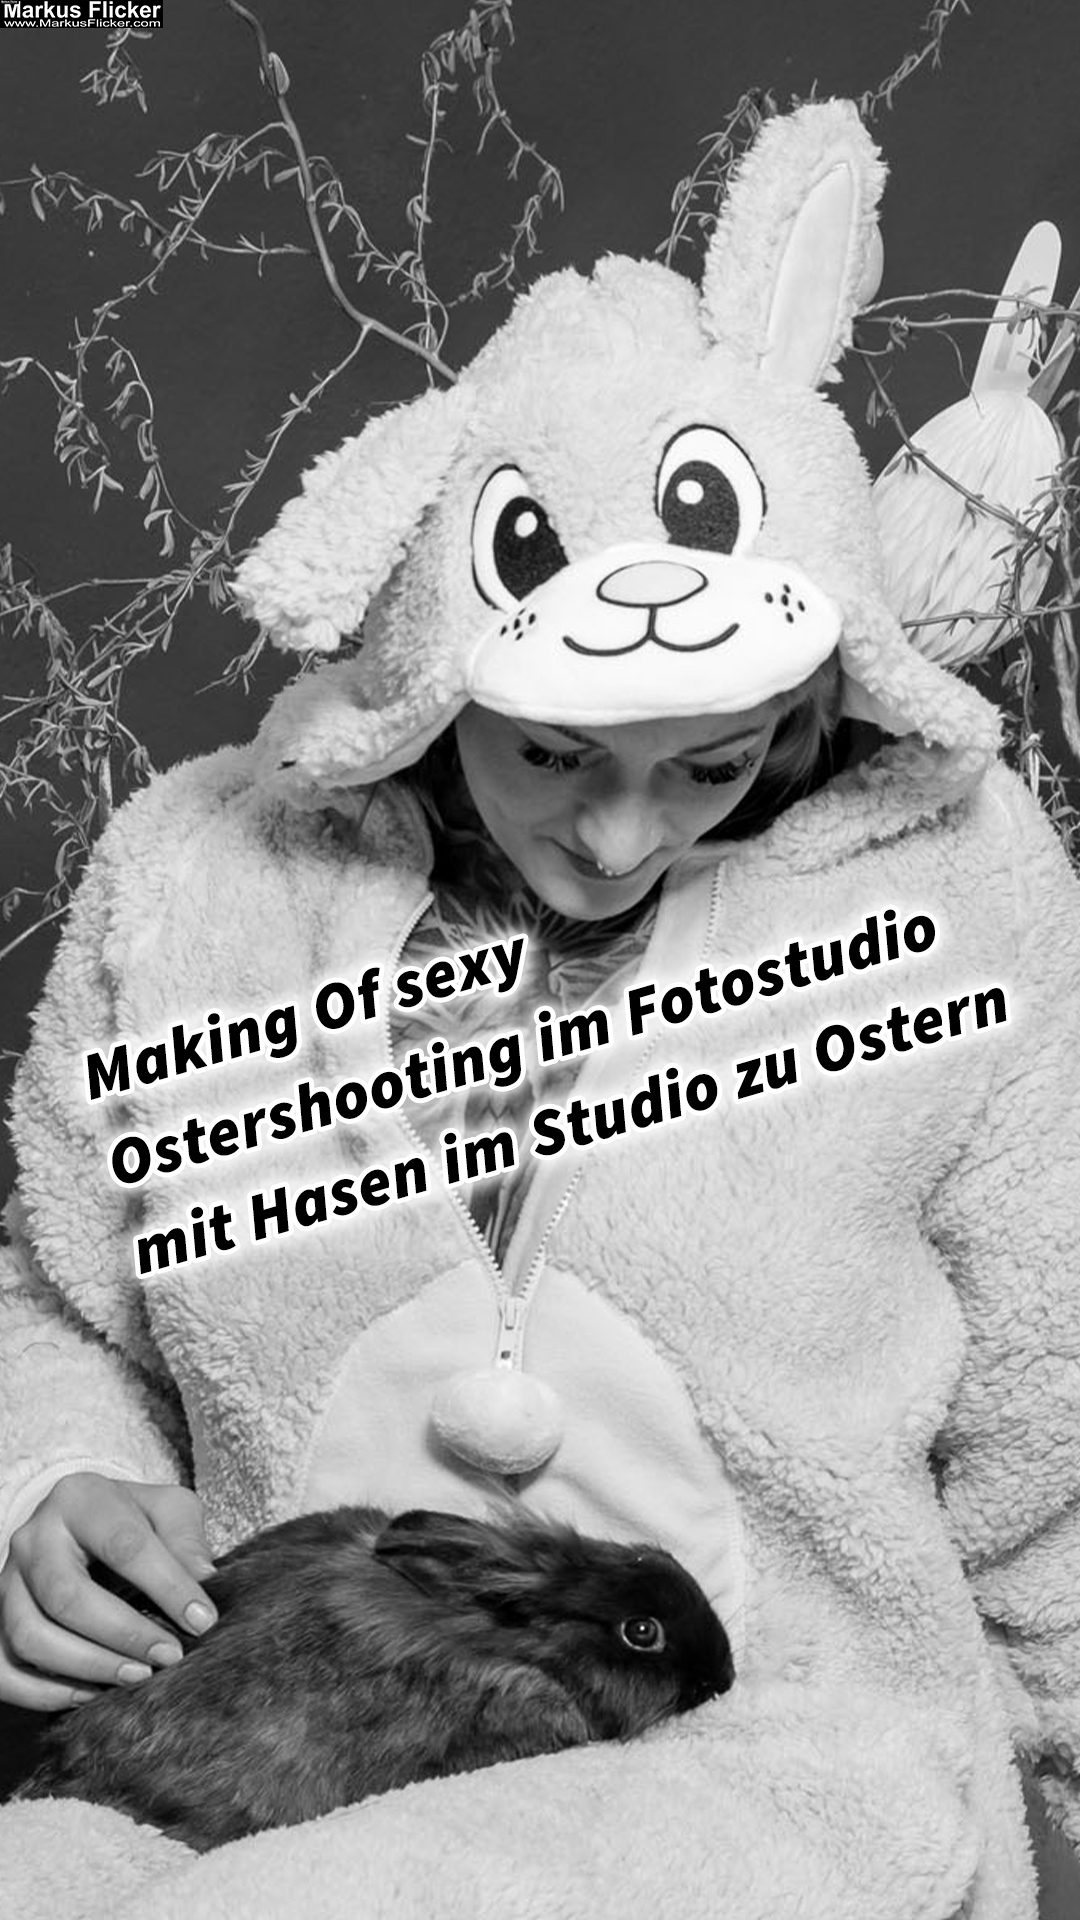 Making Of sexy Ostershooting im Fotostudio mit Hasen im Studio zu Ostern